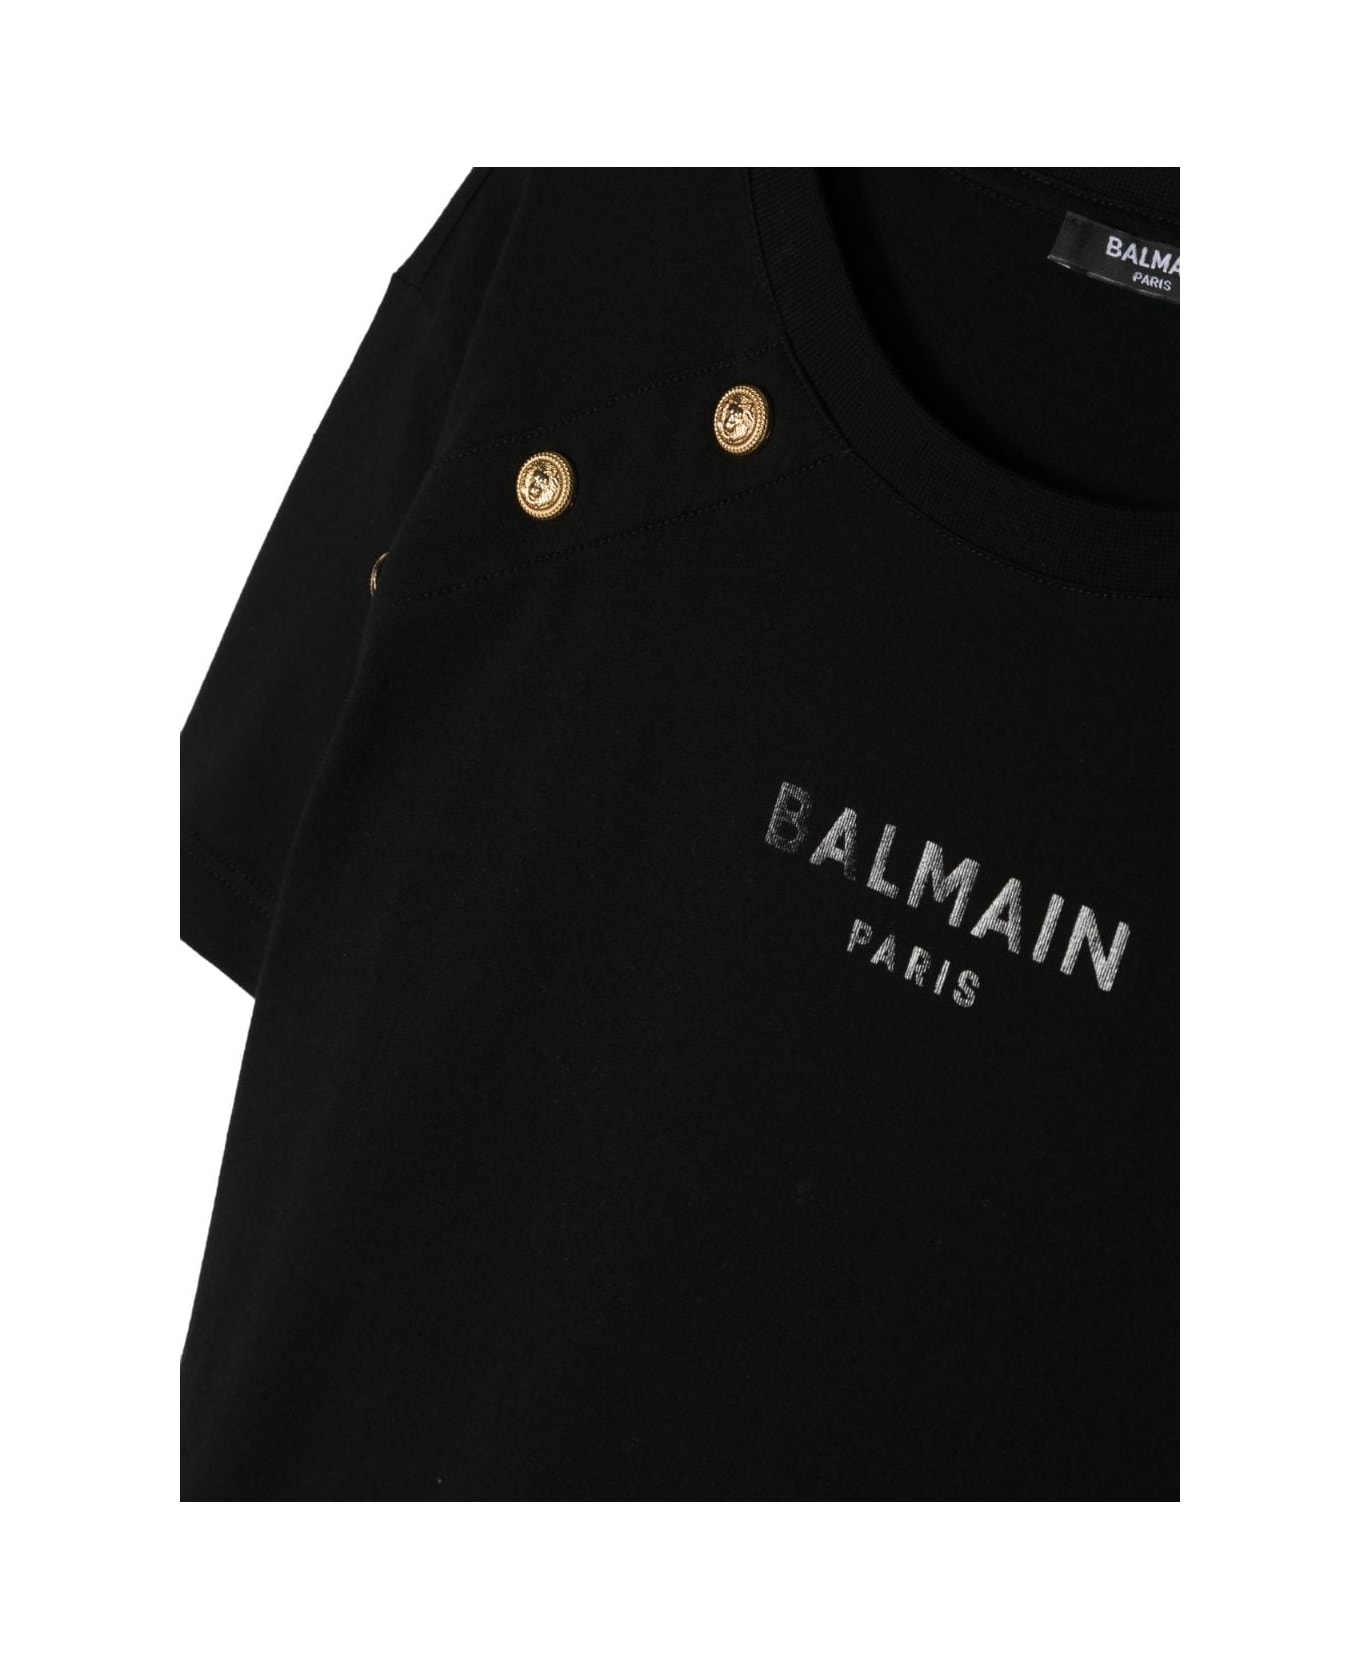 Balmain T-shirt Bianca In Jersey Di Cotone Bambina - Bianco Tシャツ＆ポロシャツ